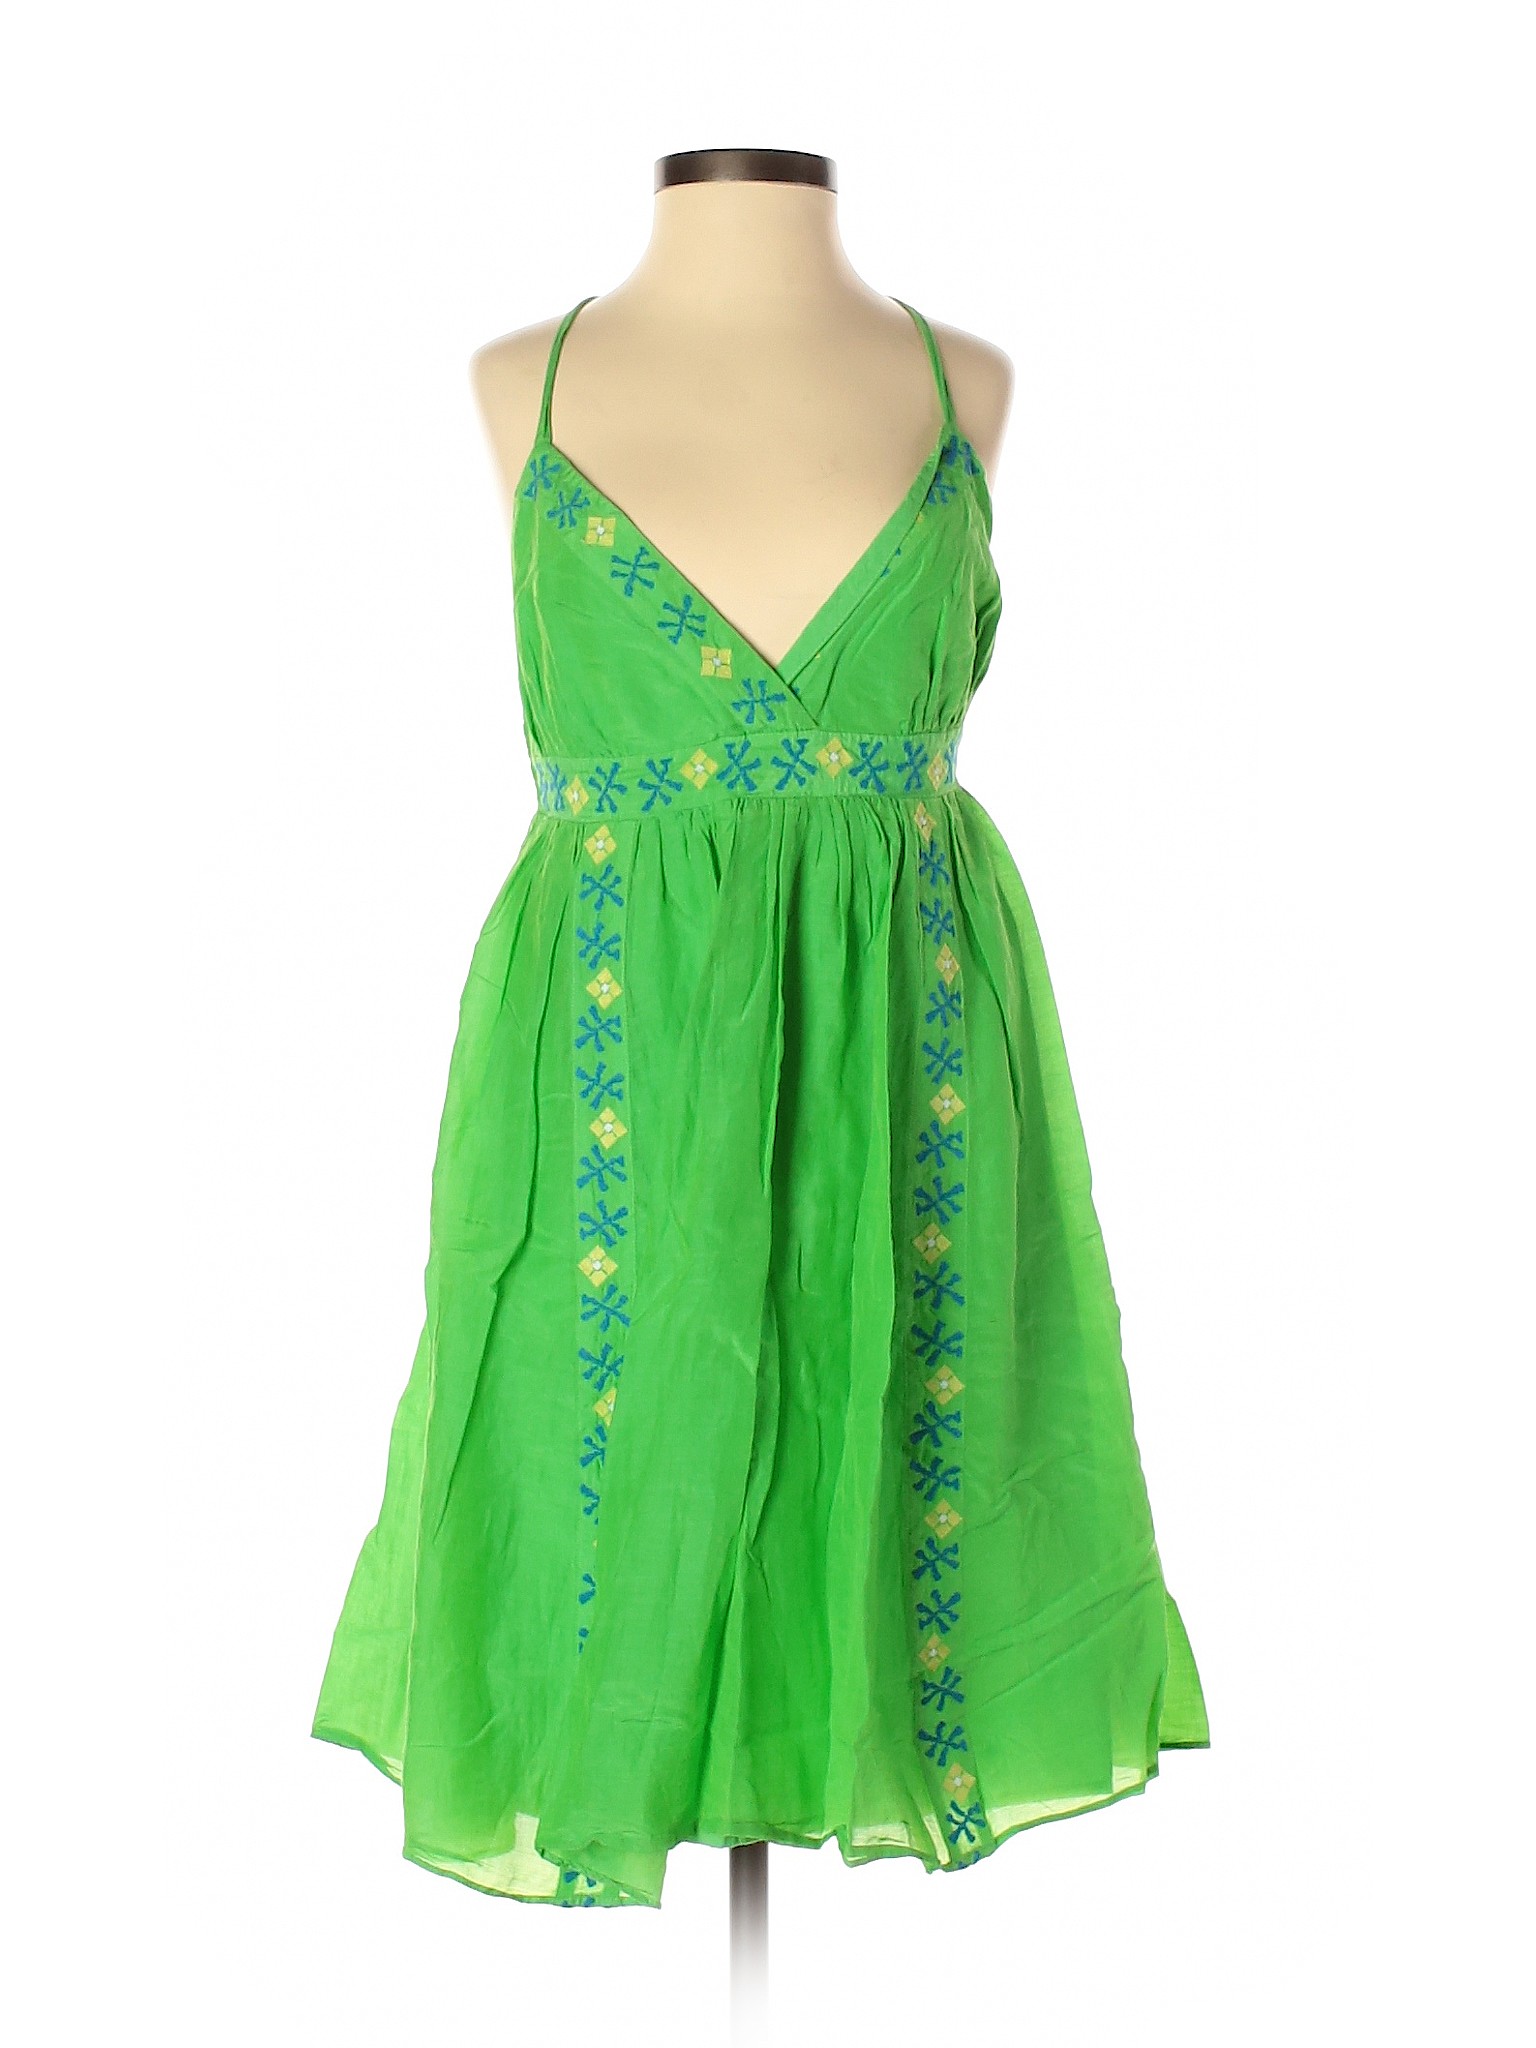 Banana Republic Factory Store Women Green Casual Dress 4 | eBay